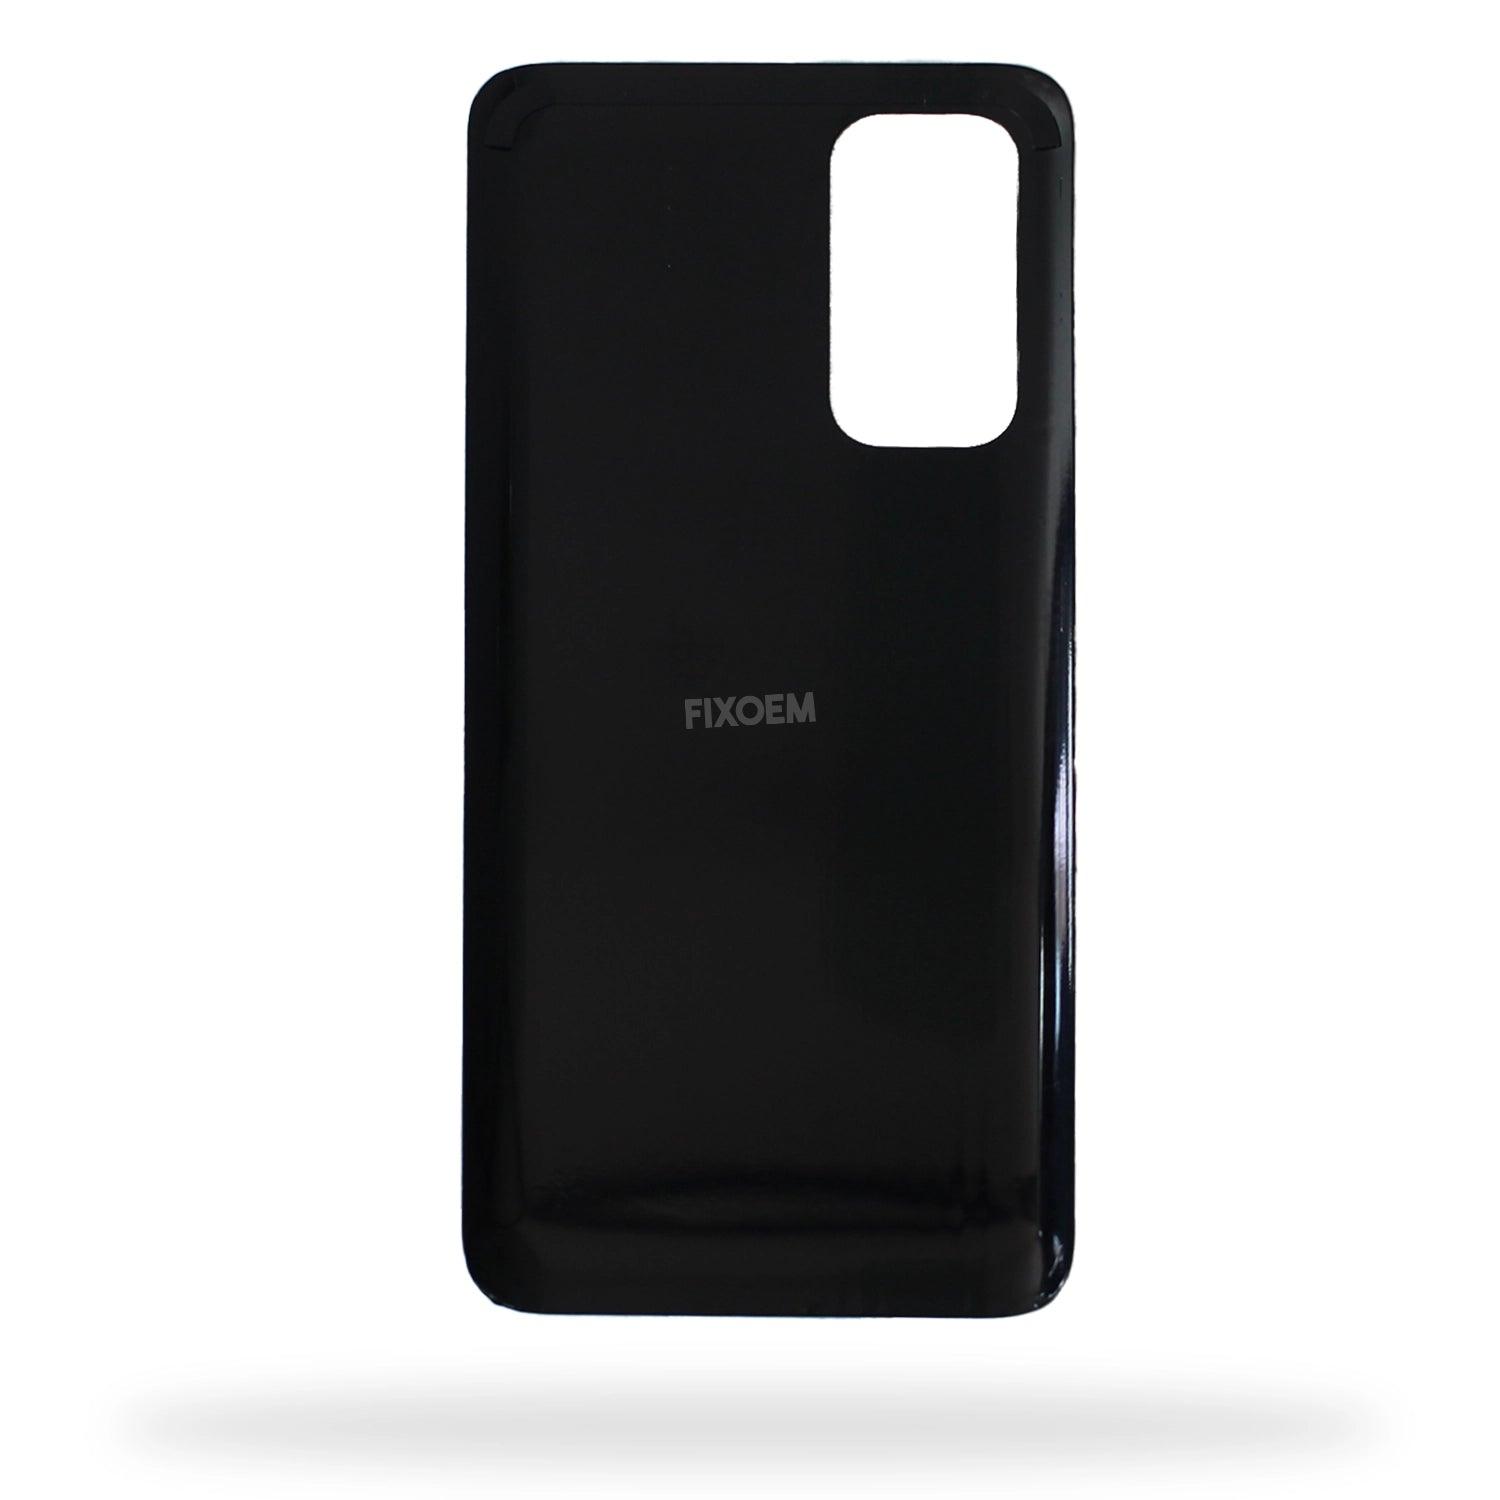 Tapa Trasera Xiaomi Mi 10T Negro M2007J3SY a solo $ 90.00 Refaccion y puestos celulares, refurbish y microelectronica.- FixOEM